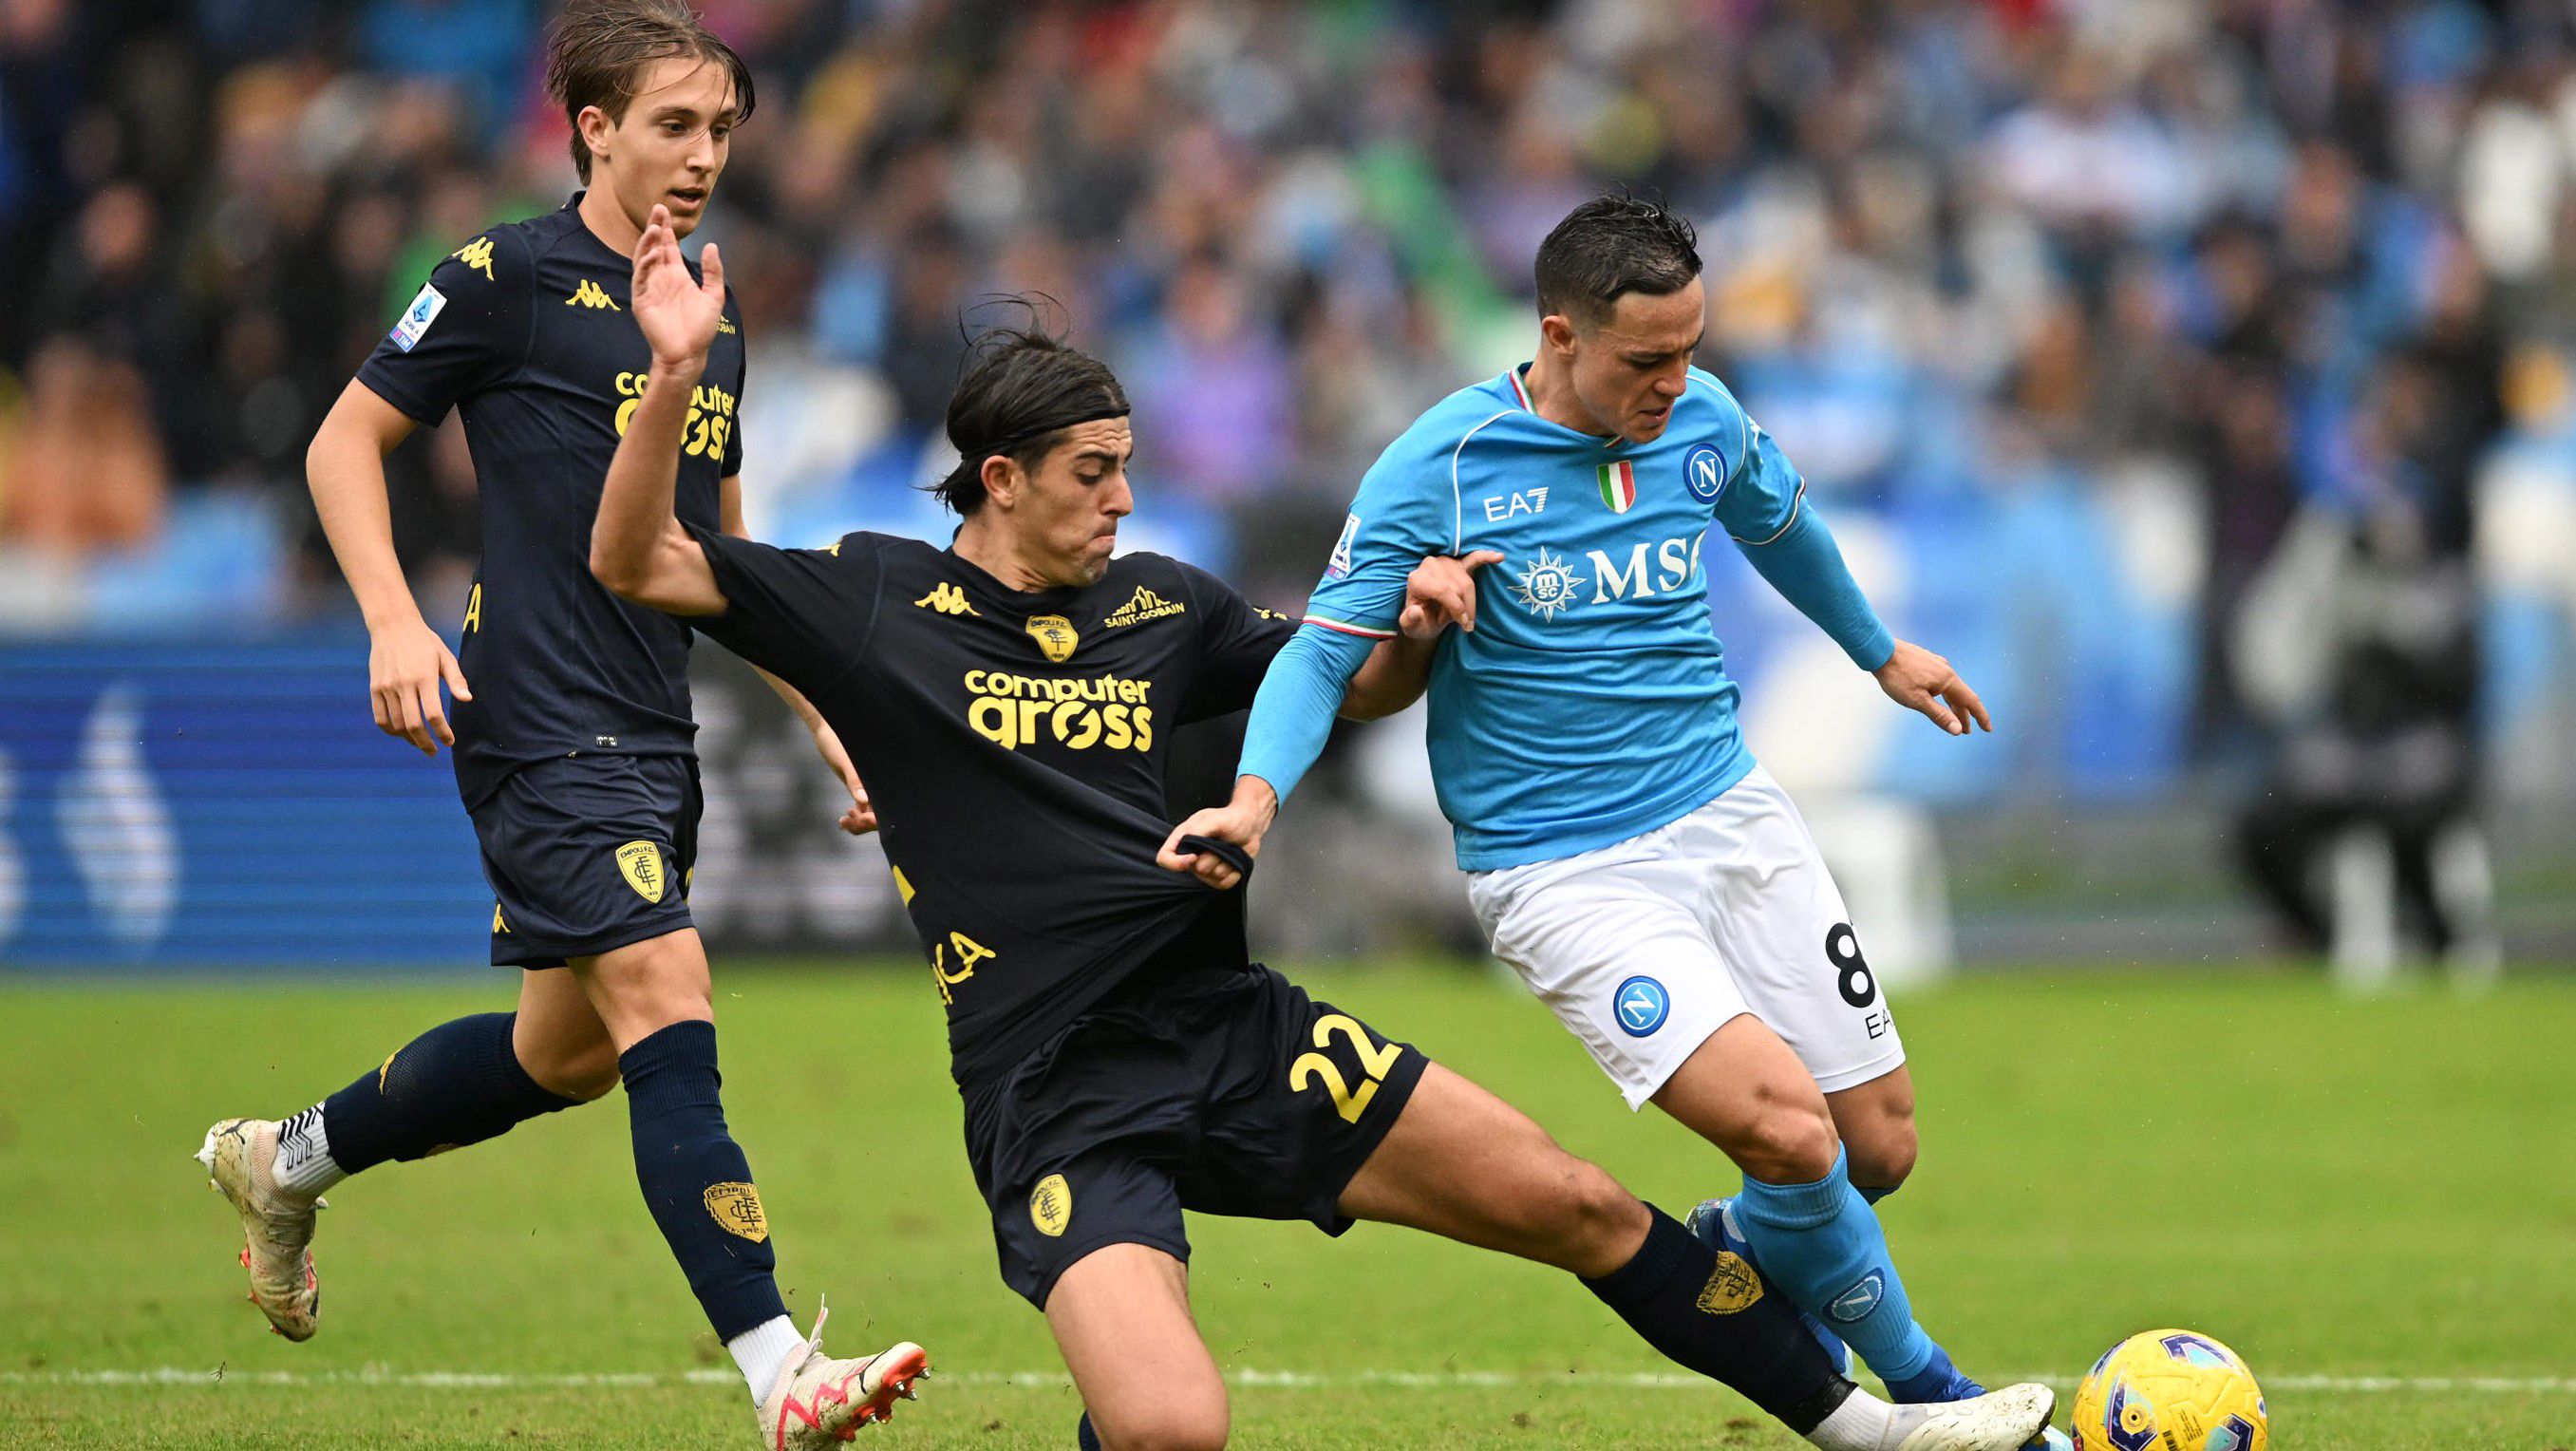 A Napoli legyőzésével lépett el a kiesőzónából az Empoli